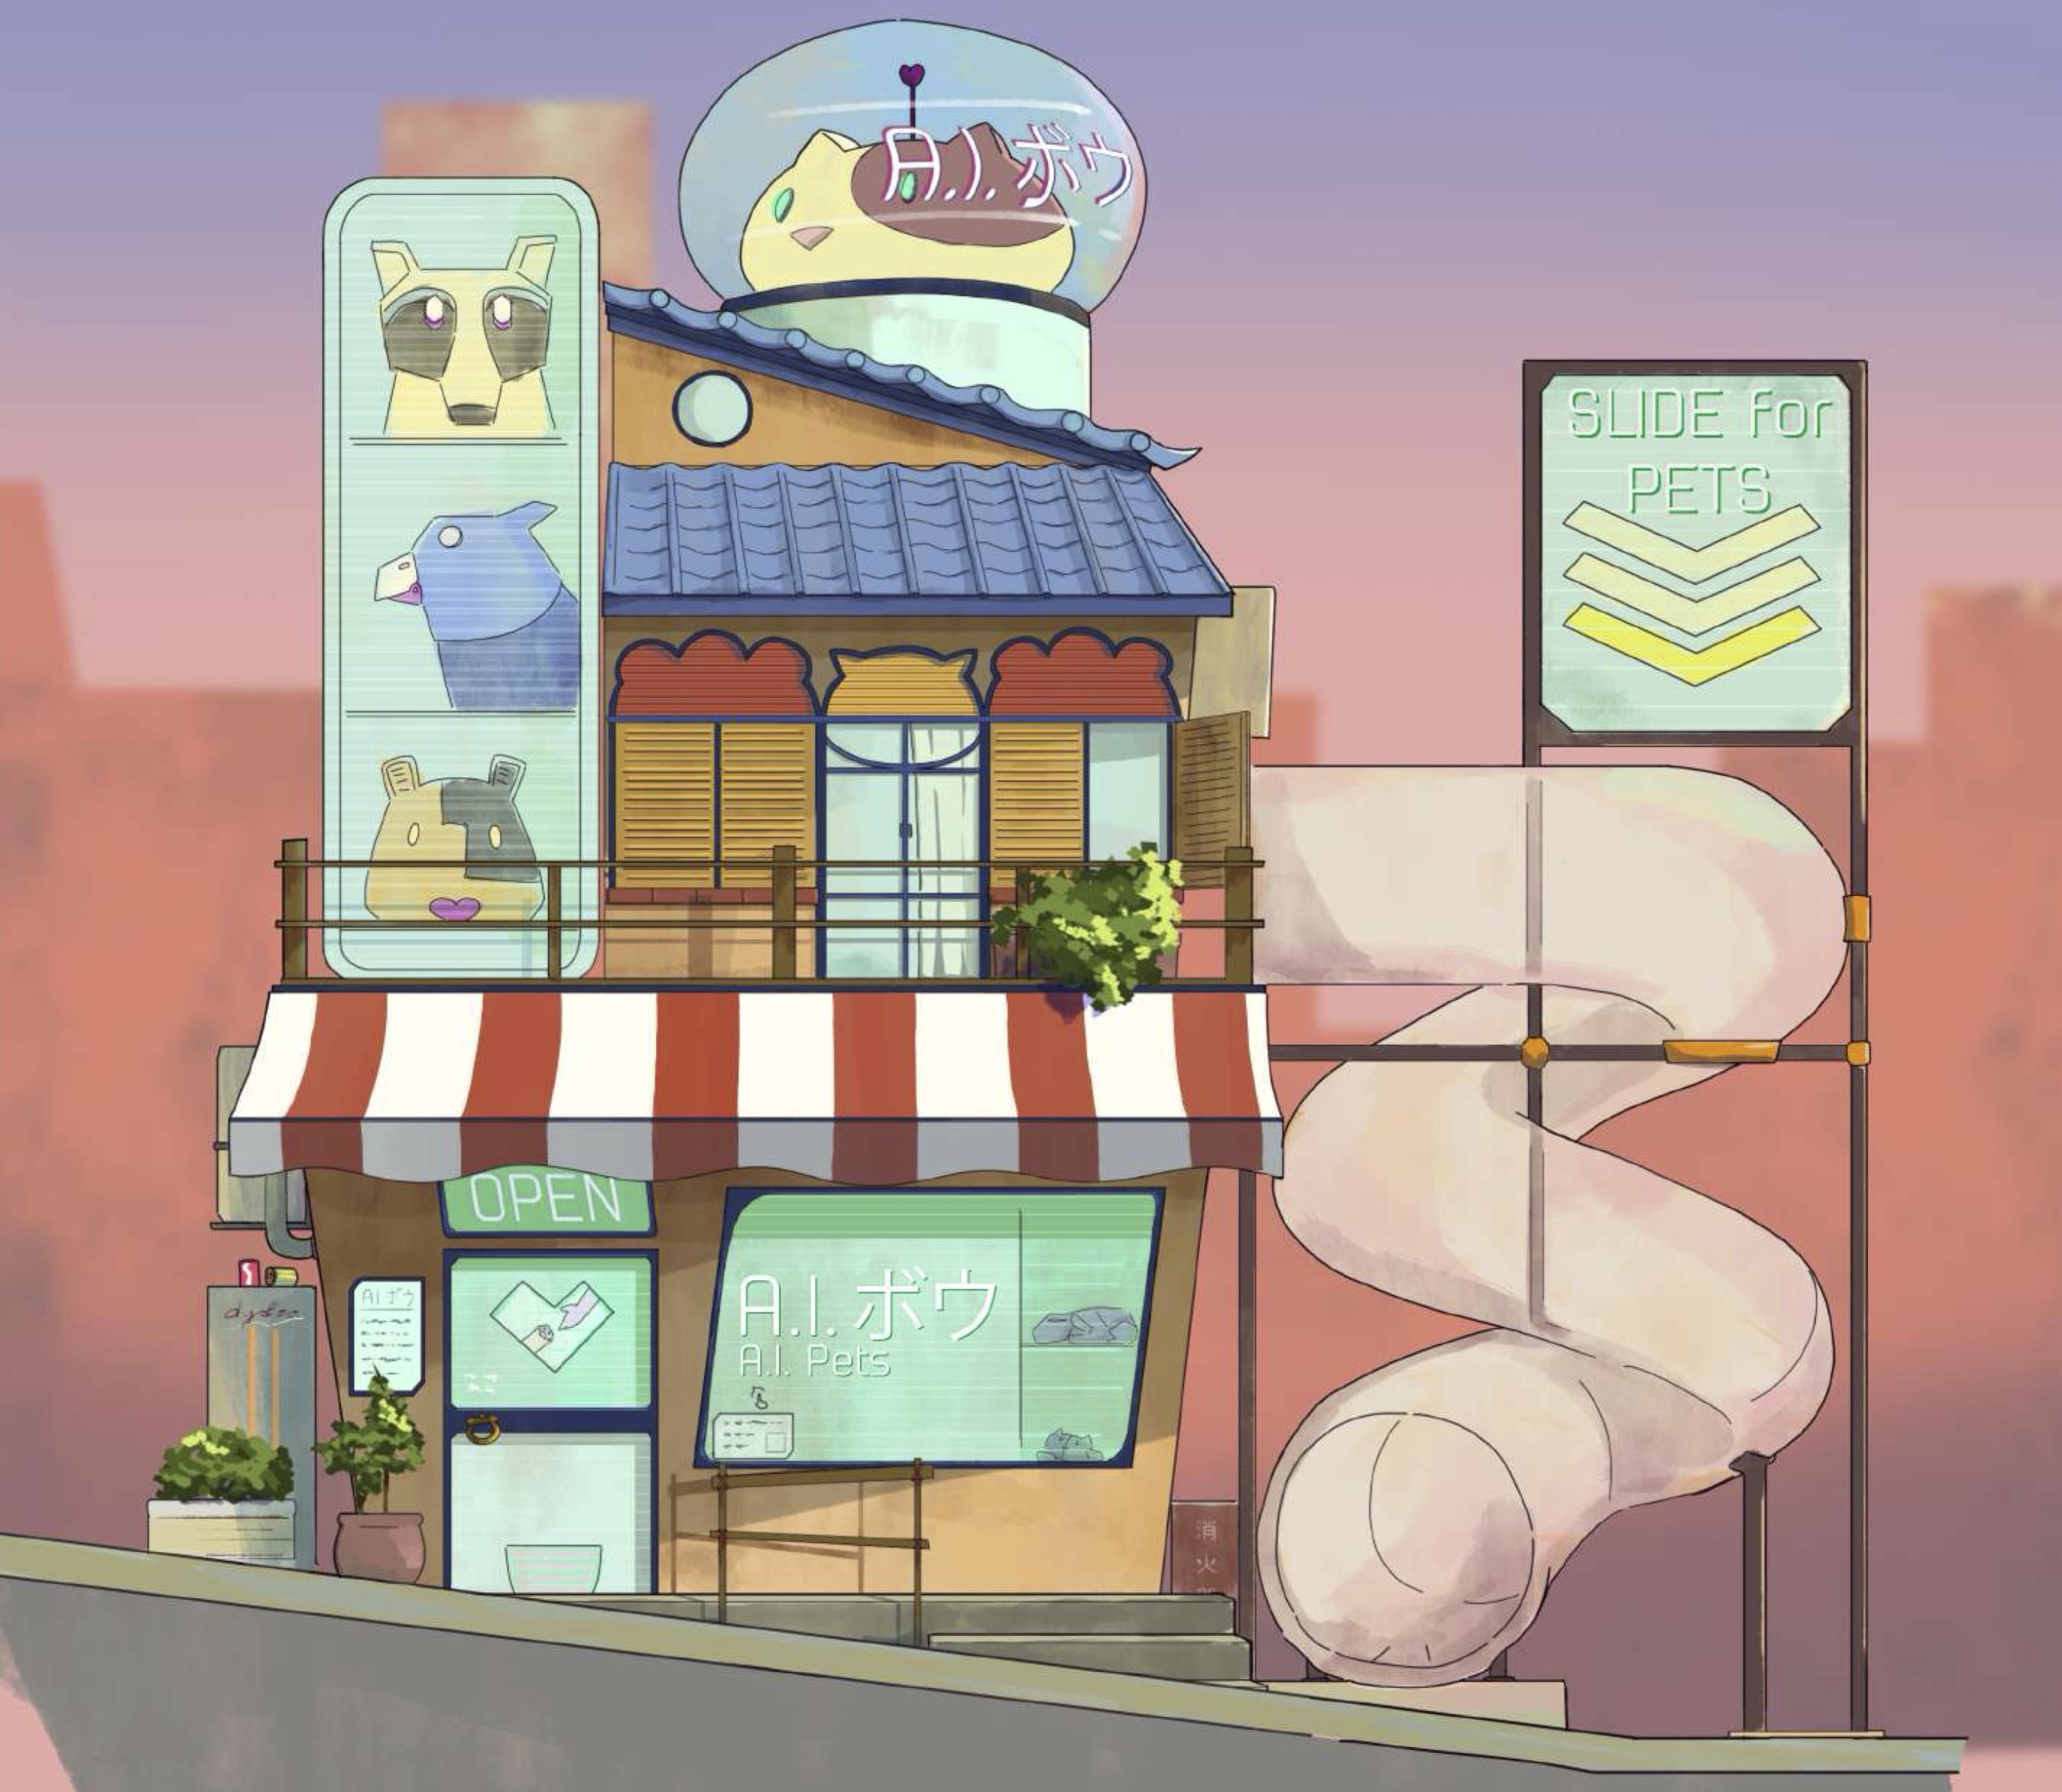 Digital artwork of a cartoon pet shop